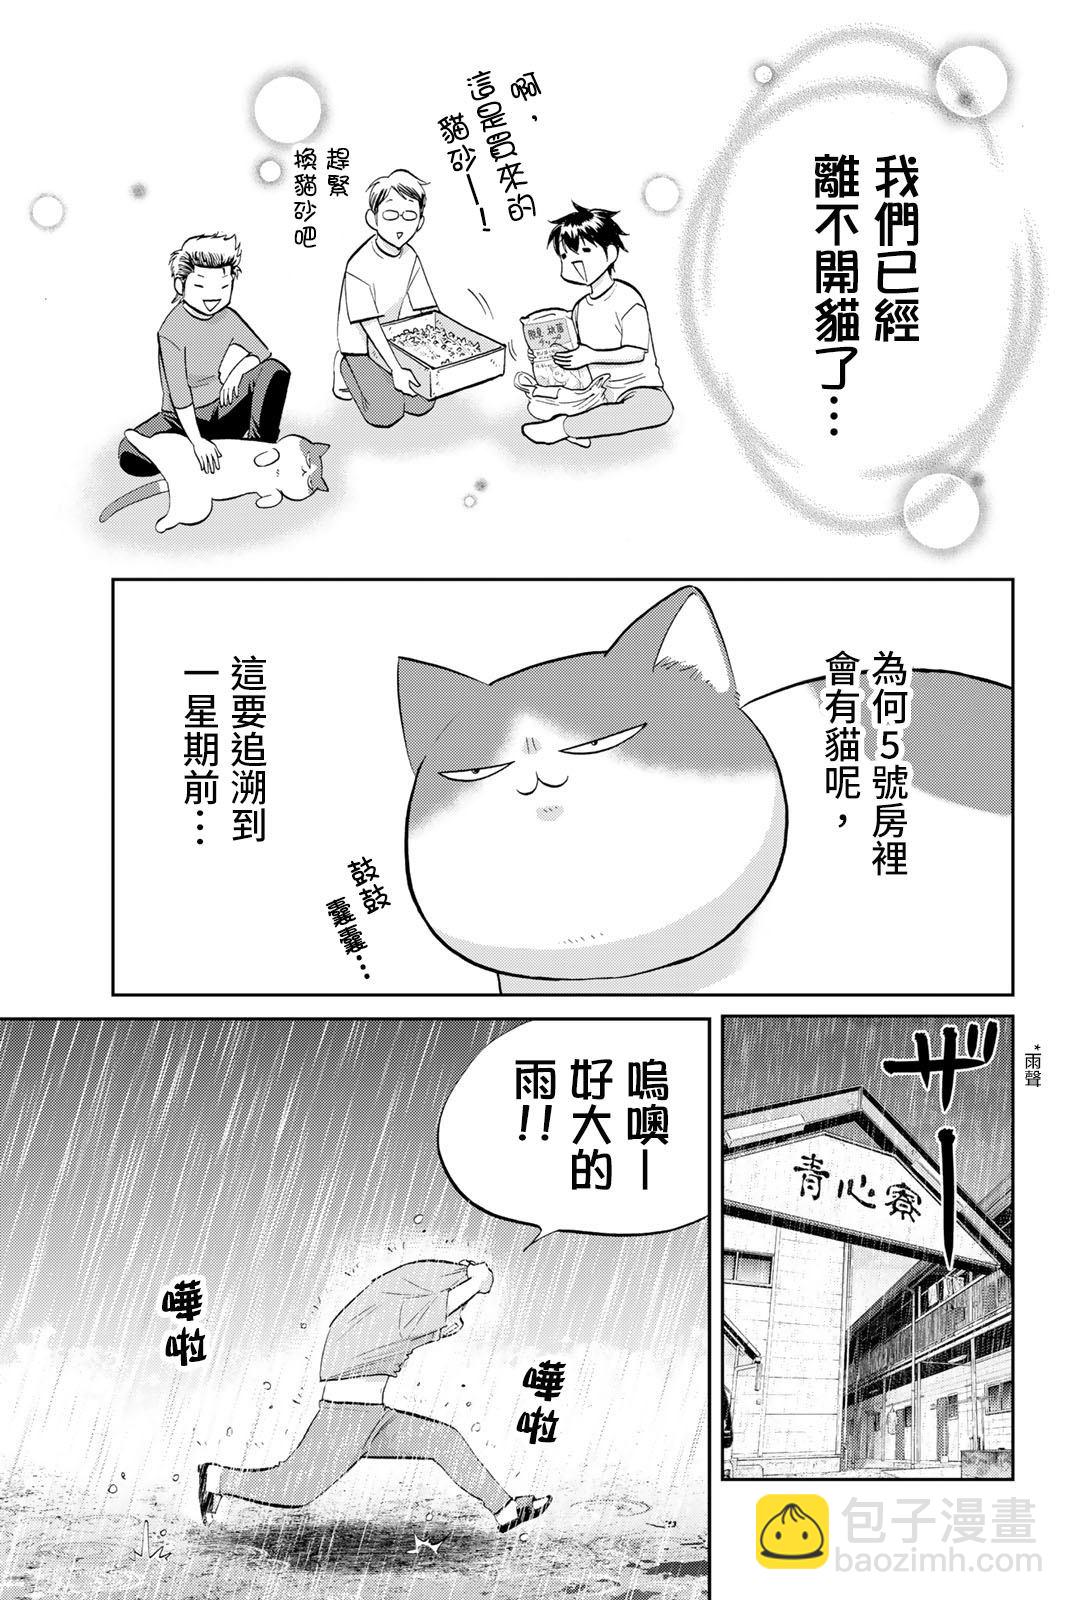 鑽石貓貓!!青道高中棒球部貓日誌 - 第1話 5號房和貓 - 2